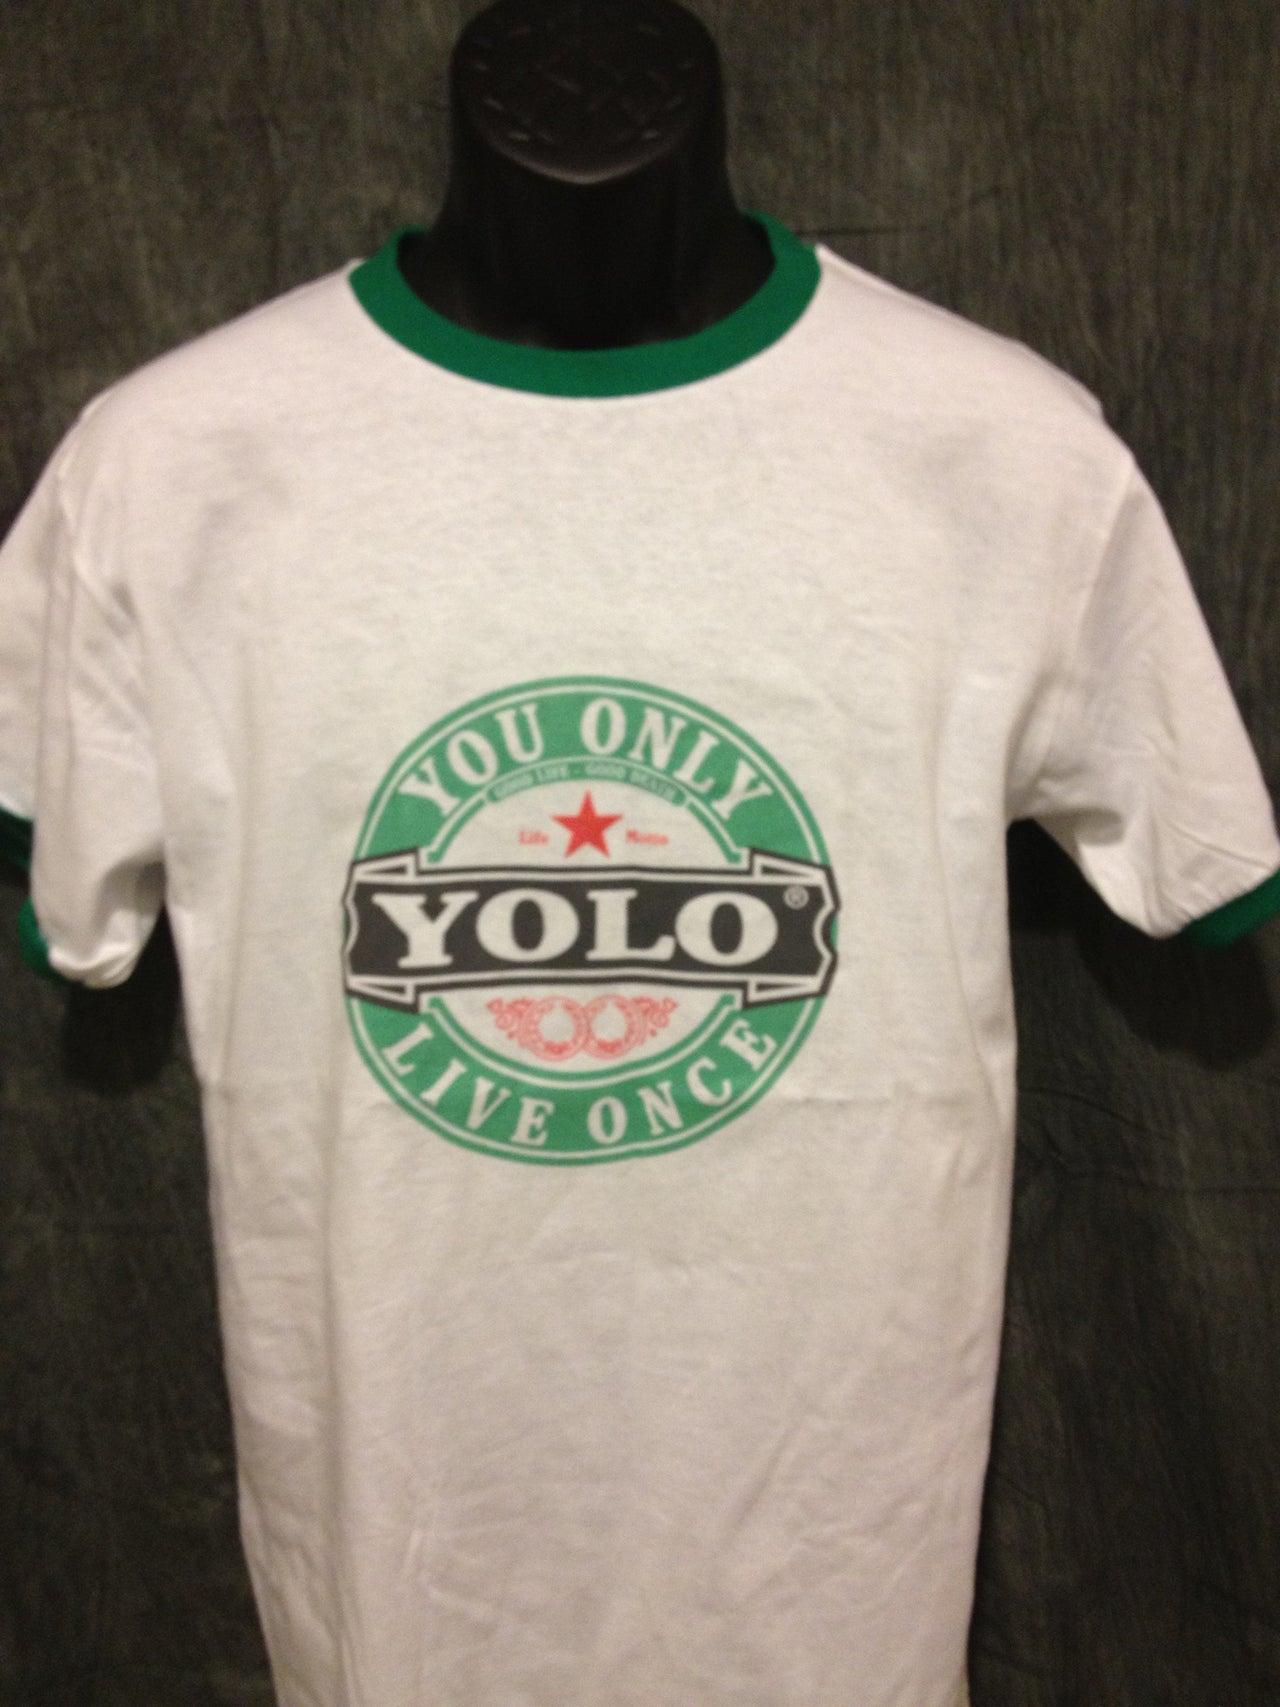 Drake Yolo Girls Ringer Tshirt: Yolo Print on Green Womens Ringer Tshirt - TshirtNow.net - 2